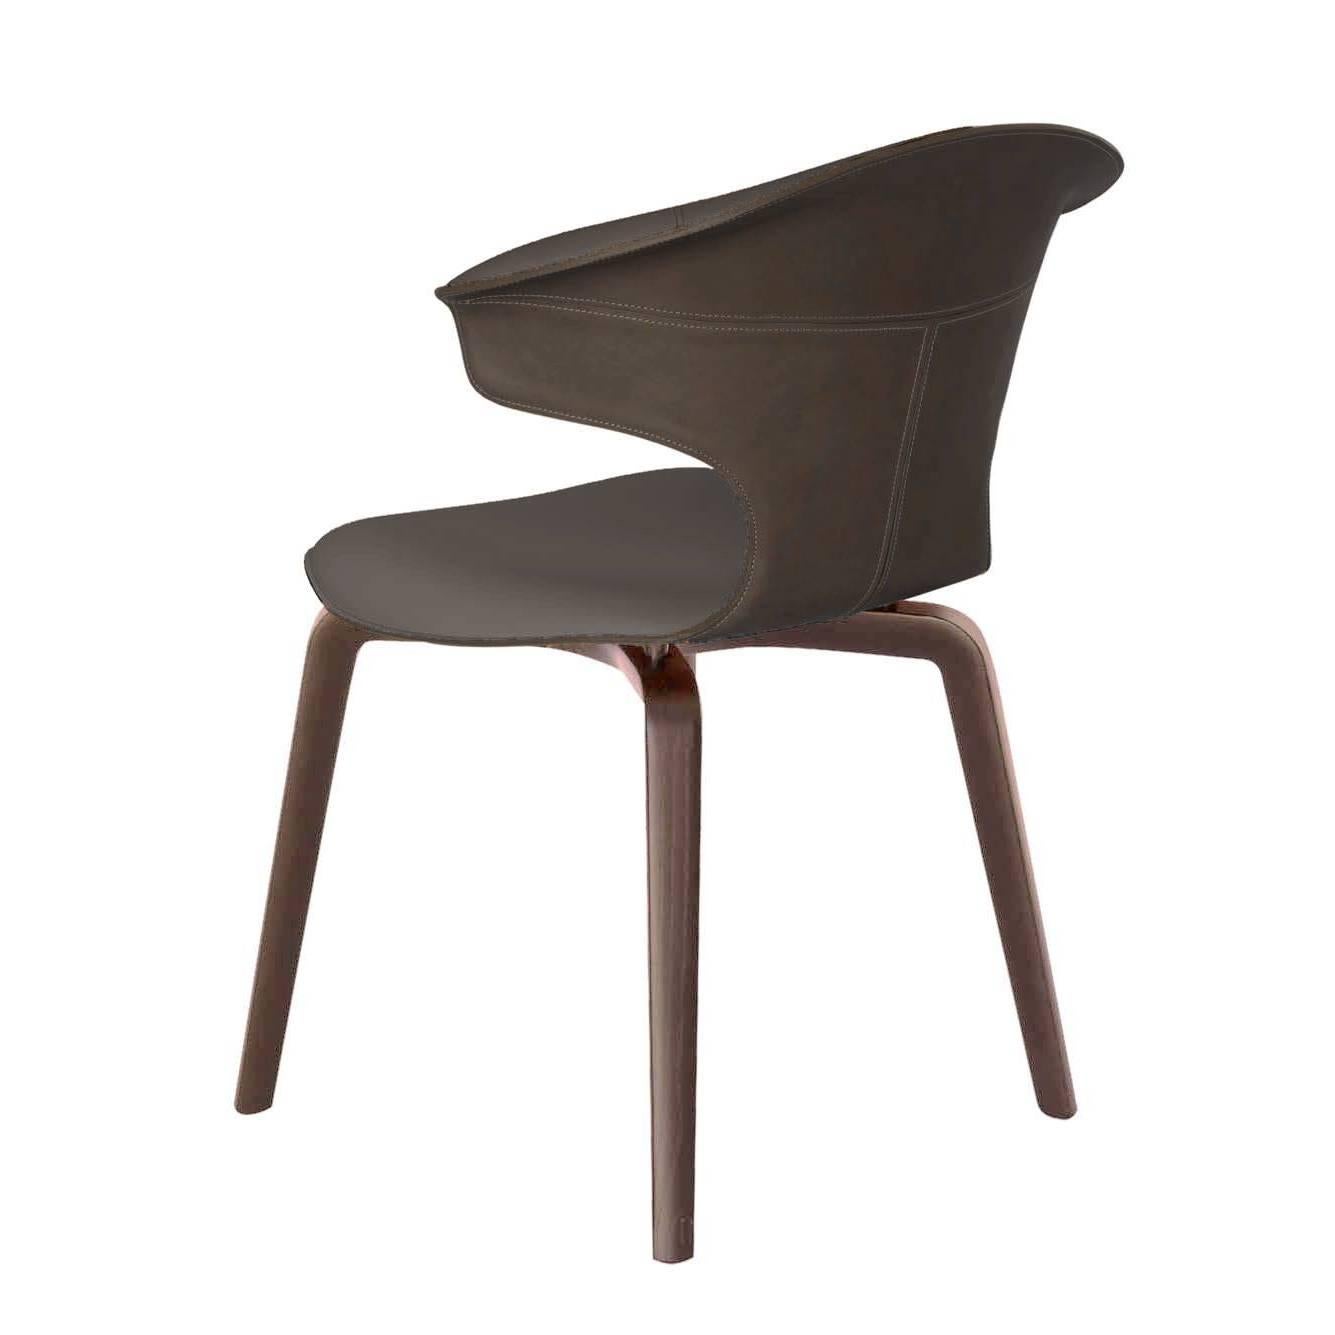 La chaise Montera avec accoudoirs conçue par Roberto Lazzeroni présente une légèreté formelle qui exprime le charme sensoriel de ses matériaux : le traitement brut de coupe exalte la tactilité du cuir de selle et du cuir qui, combinés ensemble, se